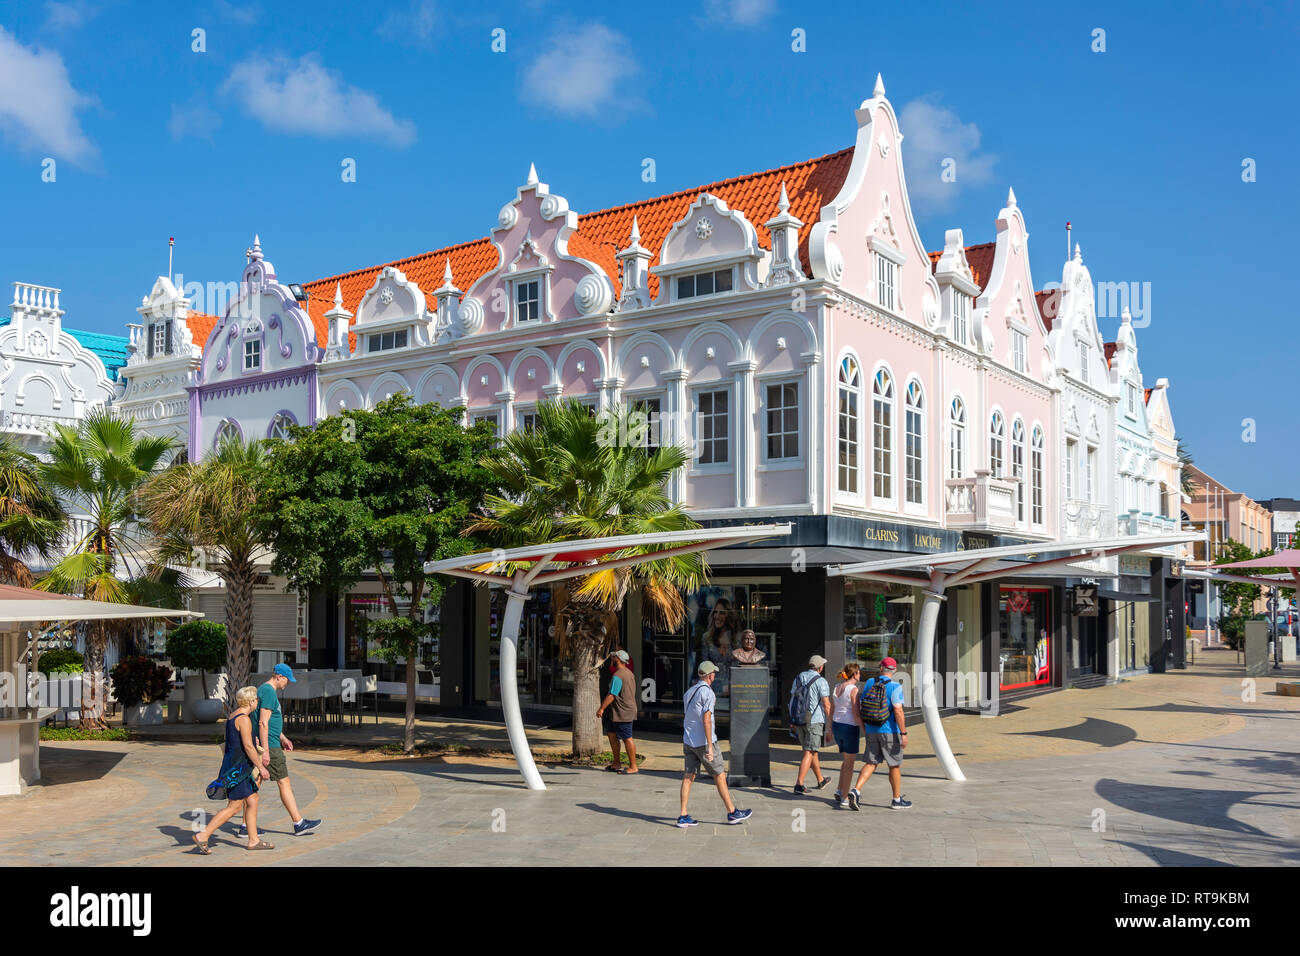 Plaza Daniel Leo mostra olandese di edifici in stile coloniale, Oranjestad, Aruba, Isole ABC, Leeward Antilles, dei Caraibi Foto Stock